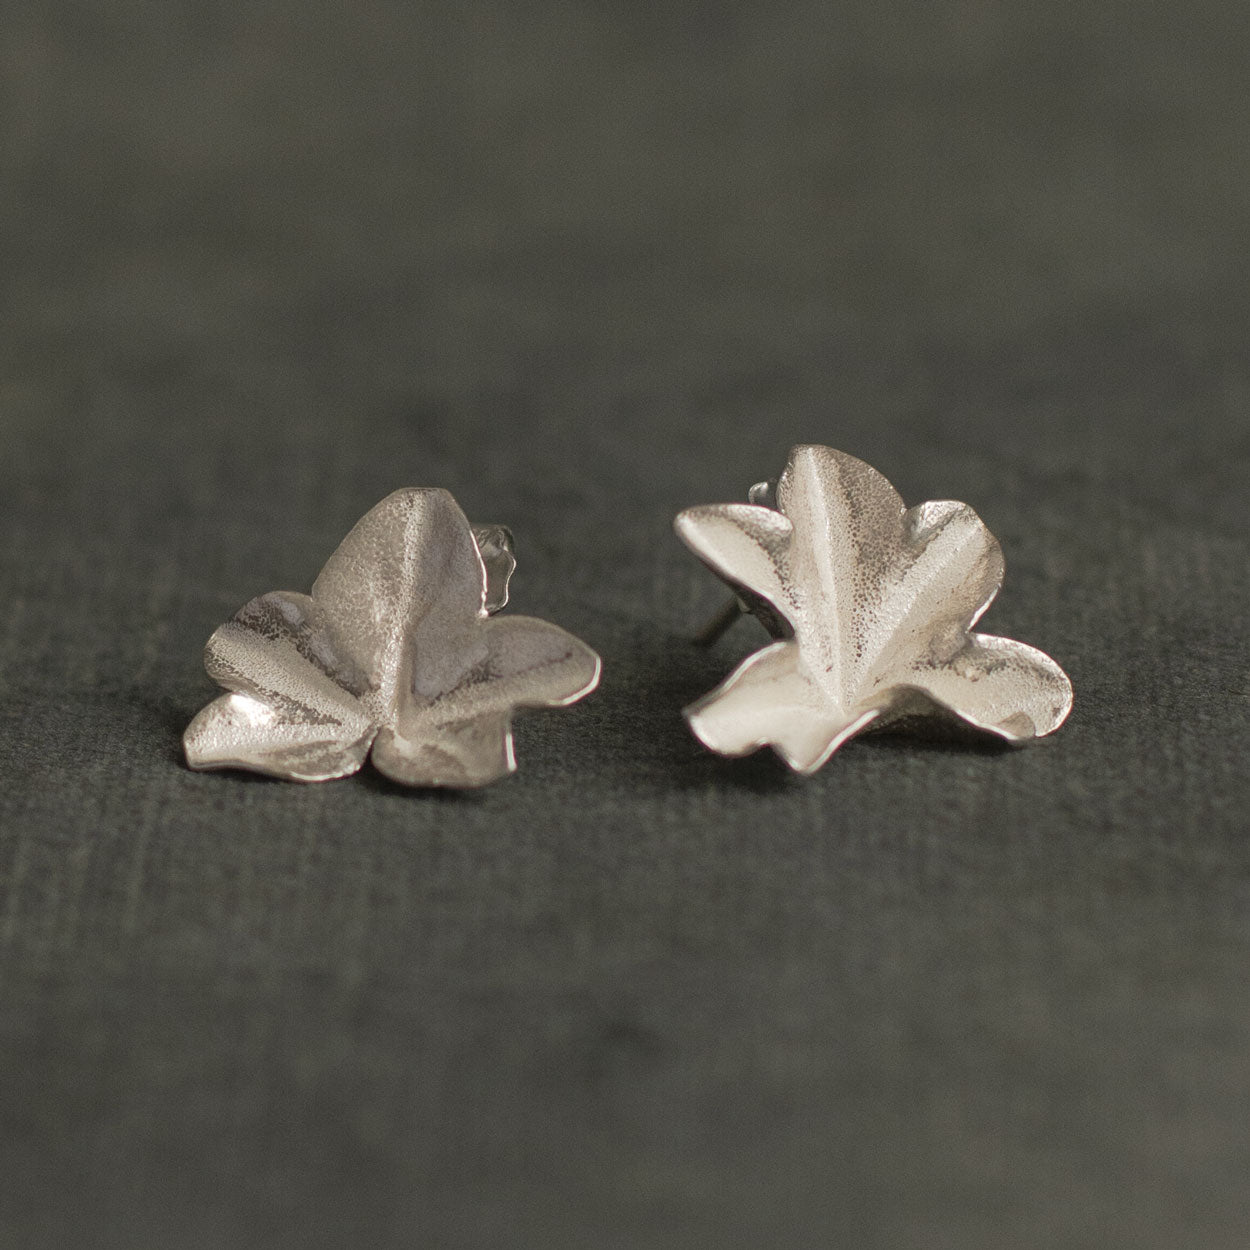 Aretes Topo Hiedra Plata Ecológica, destacando la forma única y delicada de las hojas de hiedra natural, inmortalizadas en plata reciclada